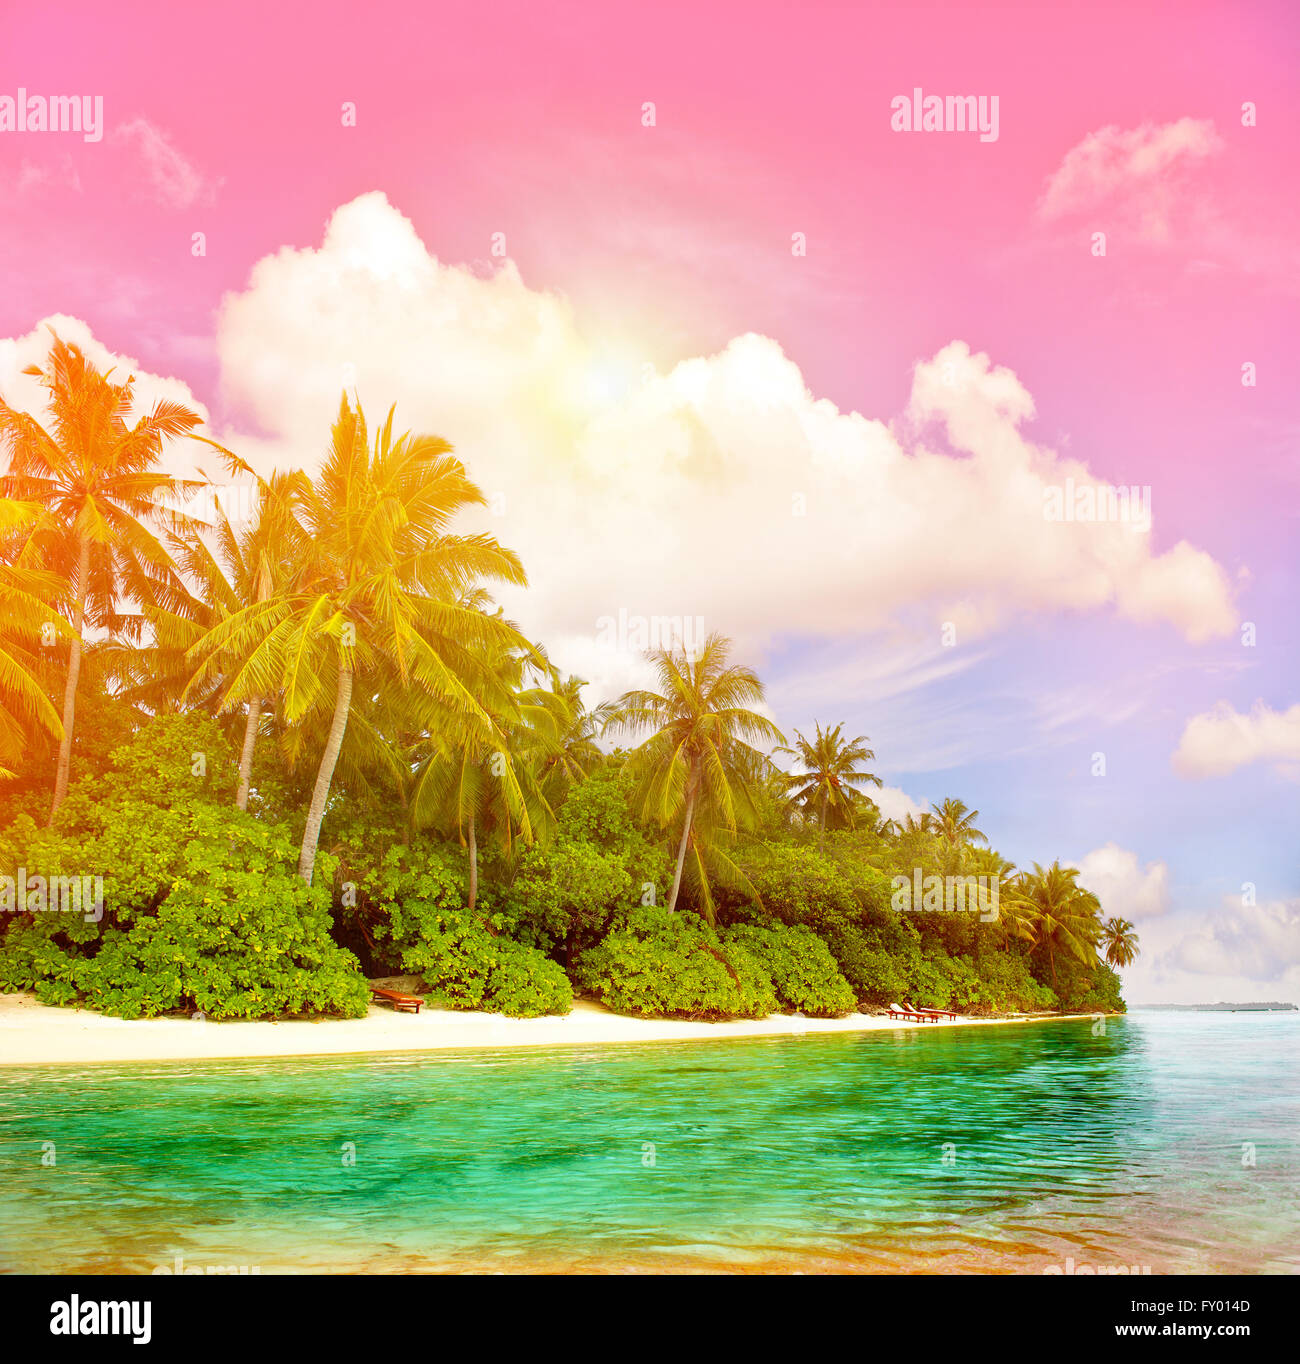 Plage tropicale avec ciel coucher de soleil coloré. Paradise Island avec palmiers. Tons style vintage photo Banque D'Images